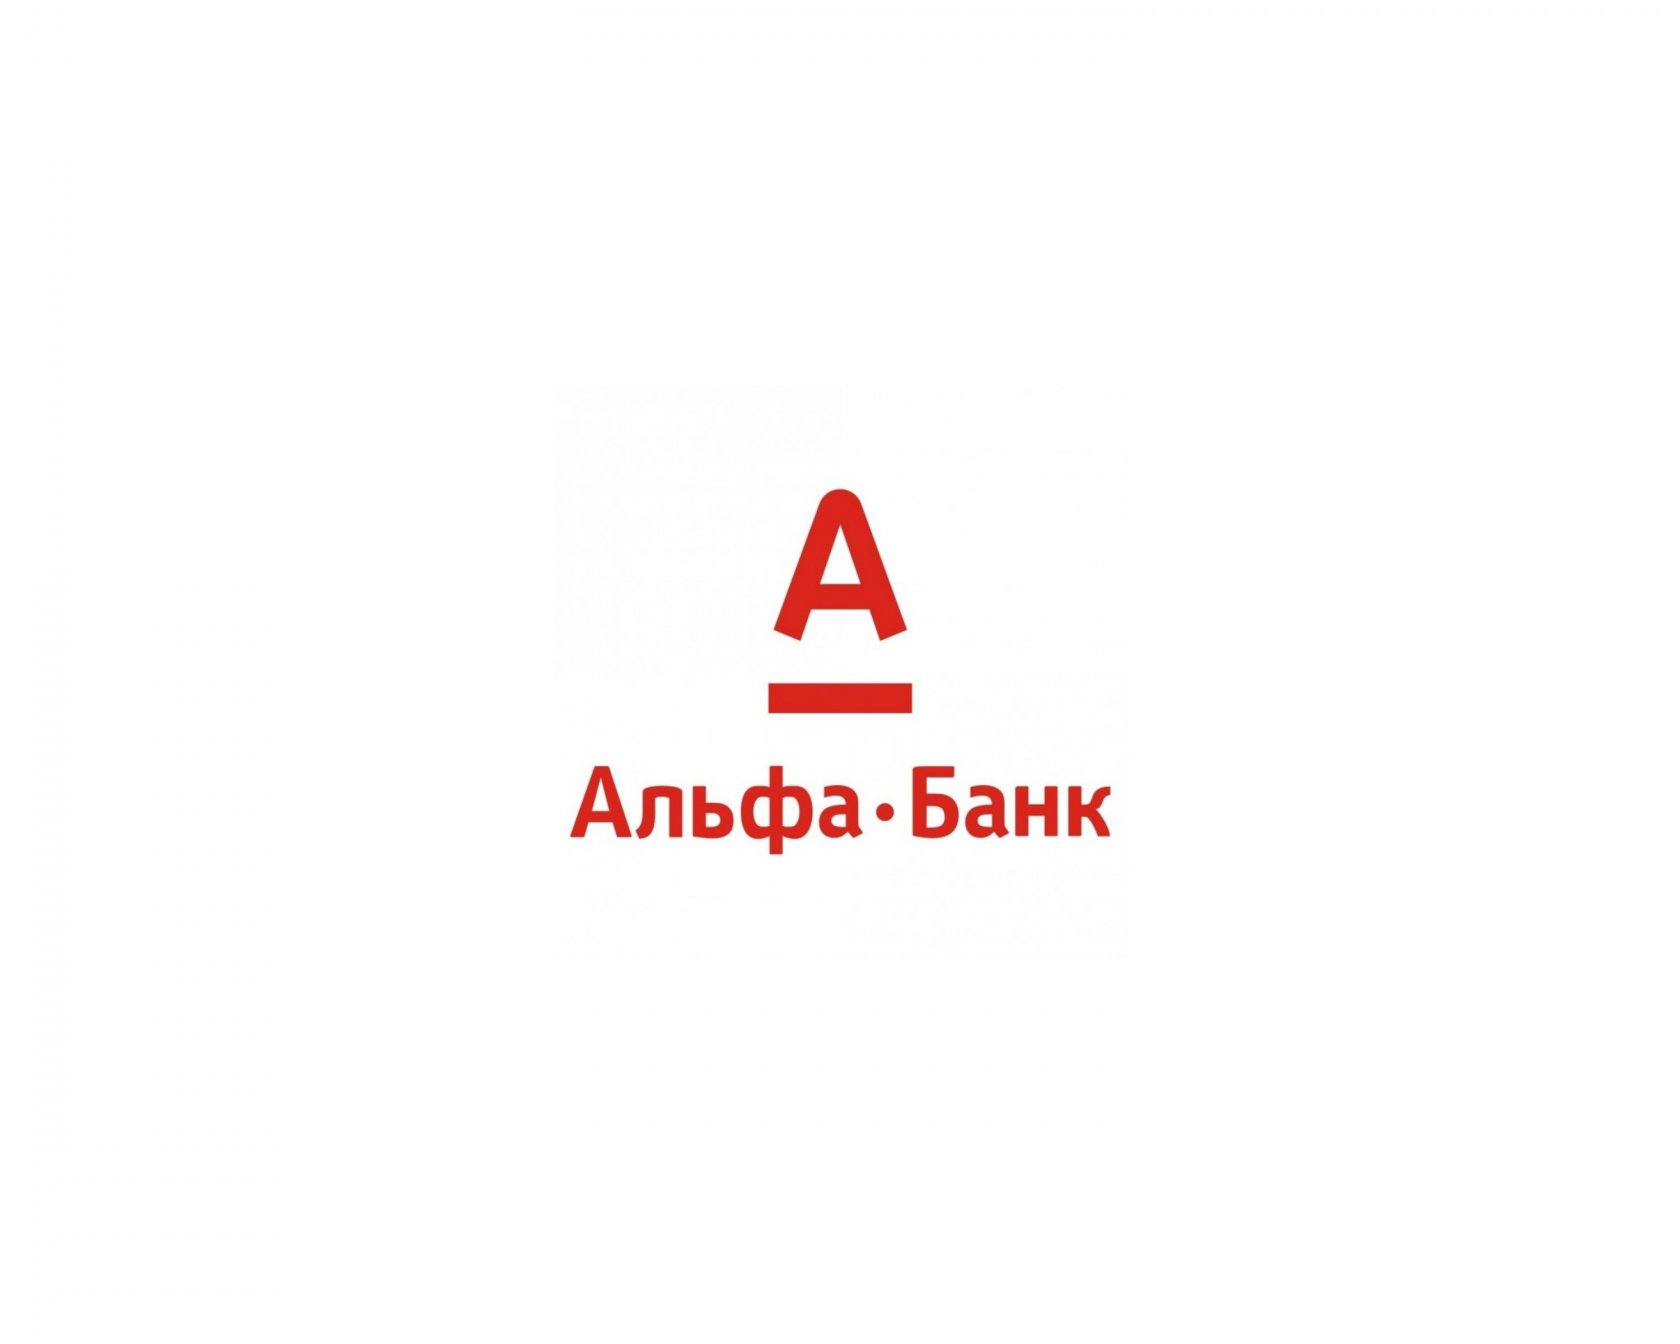 Альфабой. Эмблема Альфа банка. Альфа банк логотип на белом фоне. Алеф банк. Альфа банк иллюстрации.